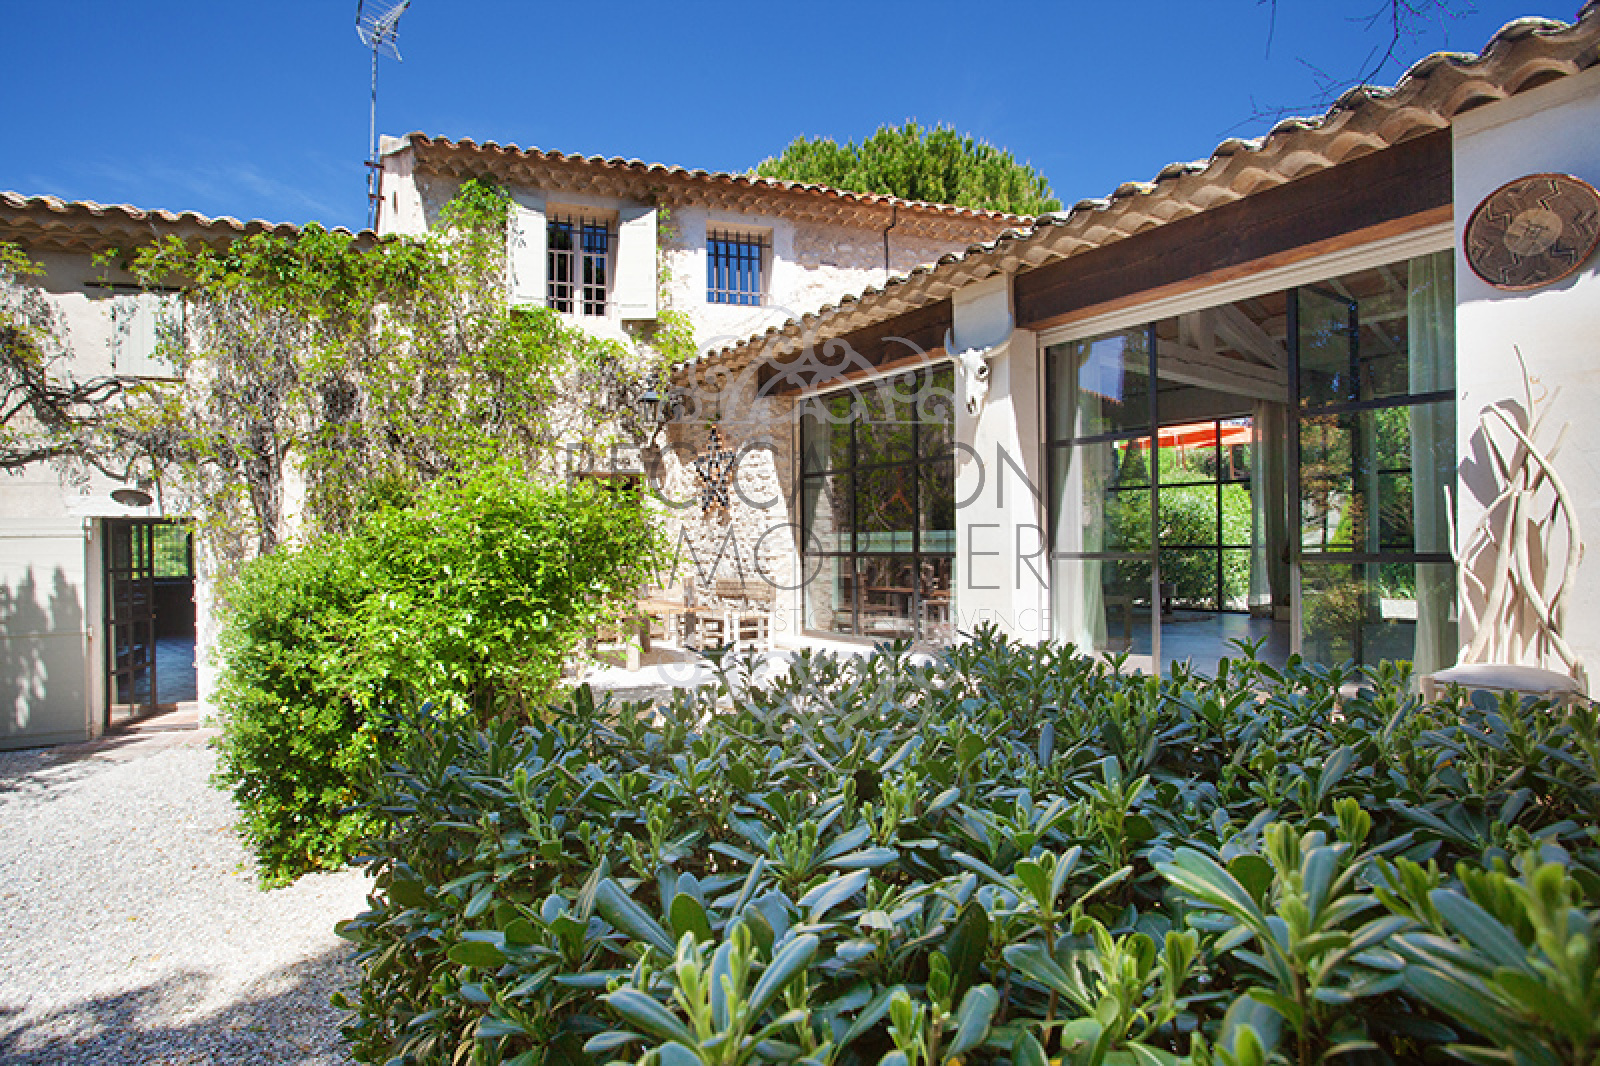 Image_6, Maisons (maison, propriÃ©tÃ©, villa, Mas,bastide, maison de village), Aix-en-Provence, ref :948 VM